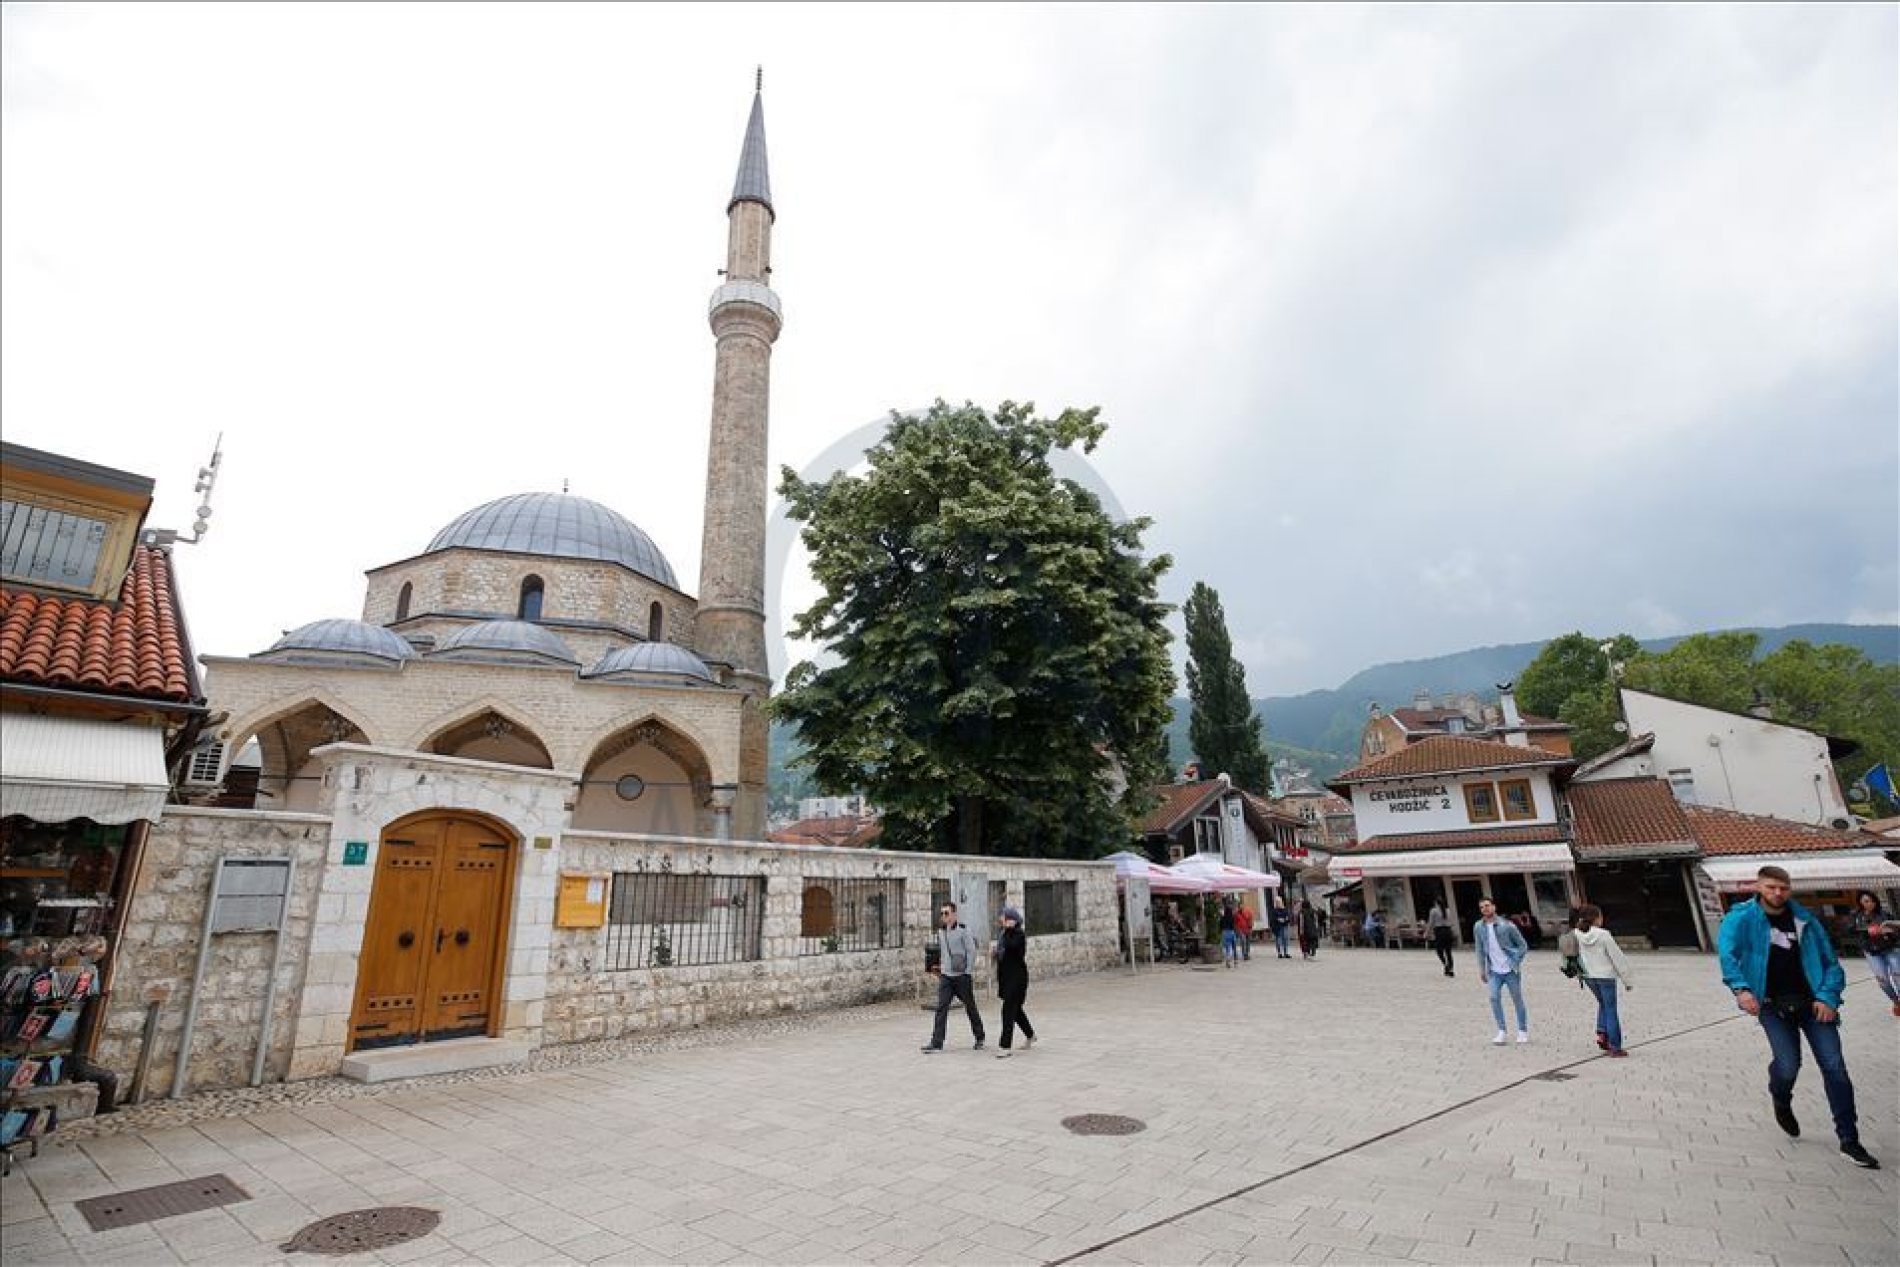 Završena restauracija Baščaršijske džamije u Sarajevu (Foto)